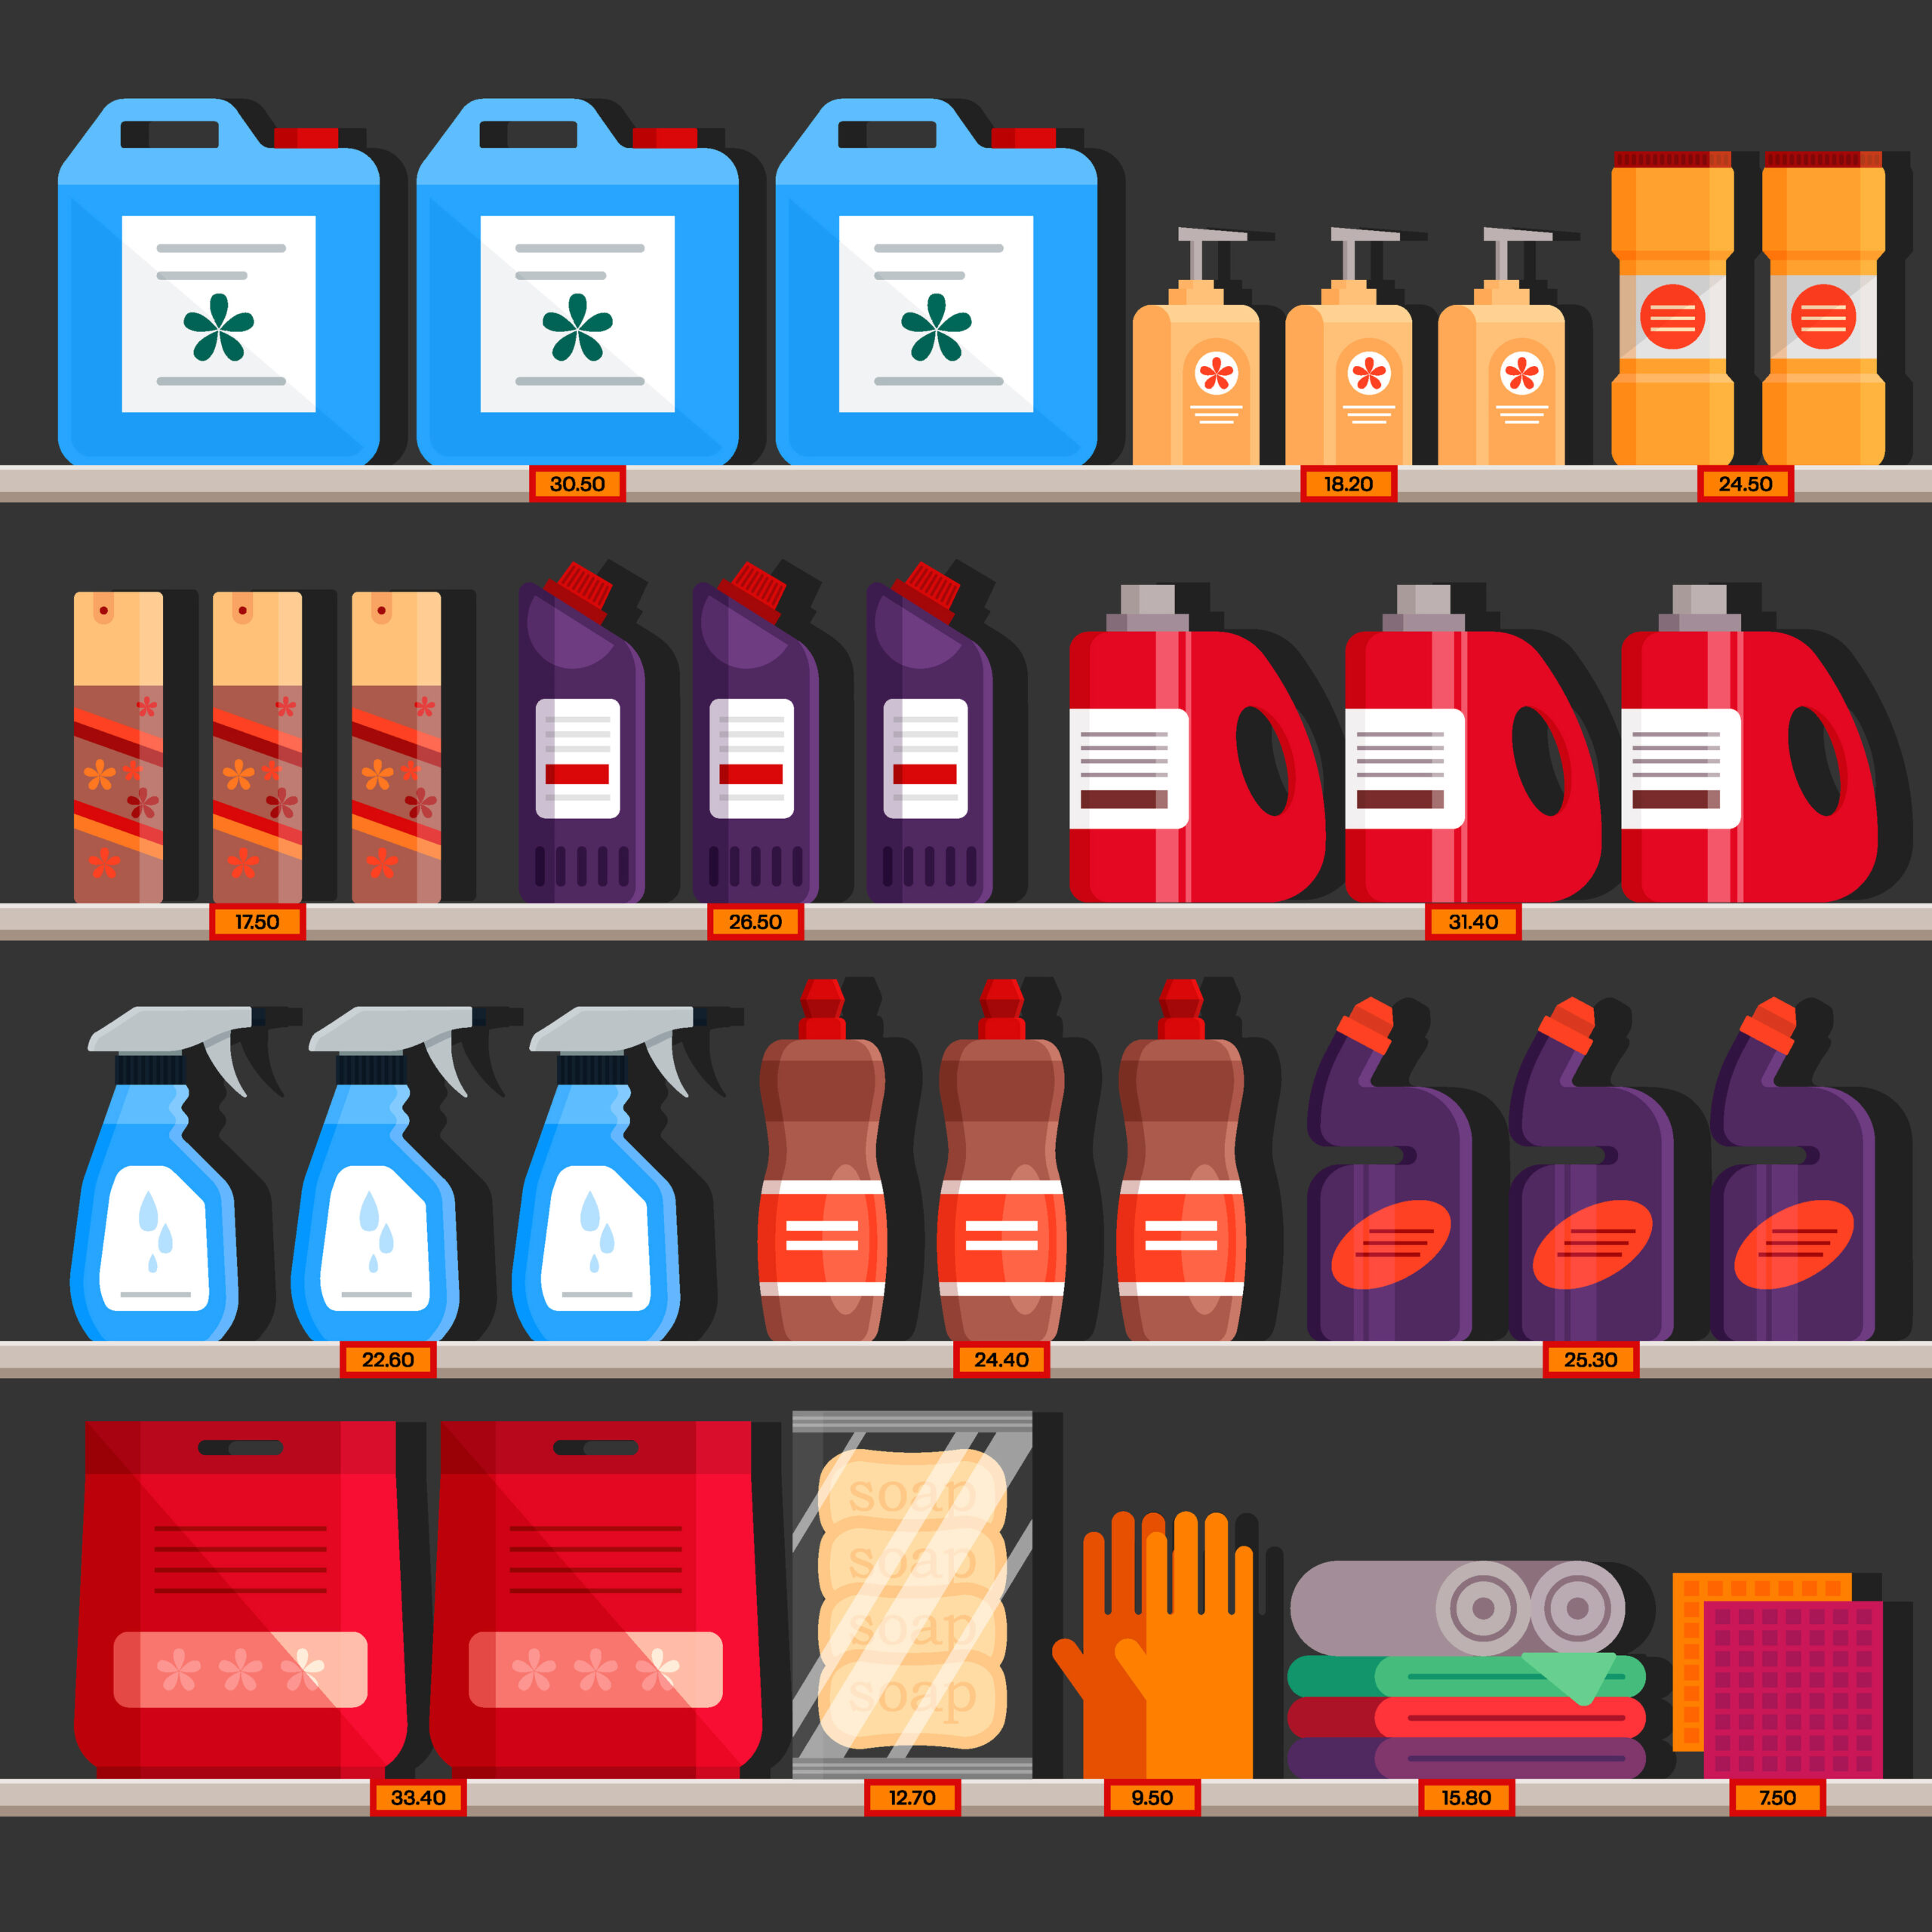 Schematische Darstellung von verschiedenen Gefahrstoff-Produkten in Verkaufsregal.